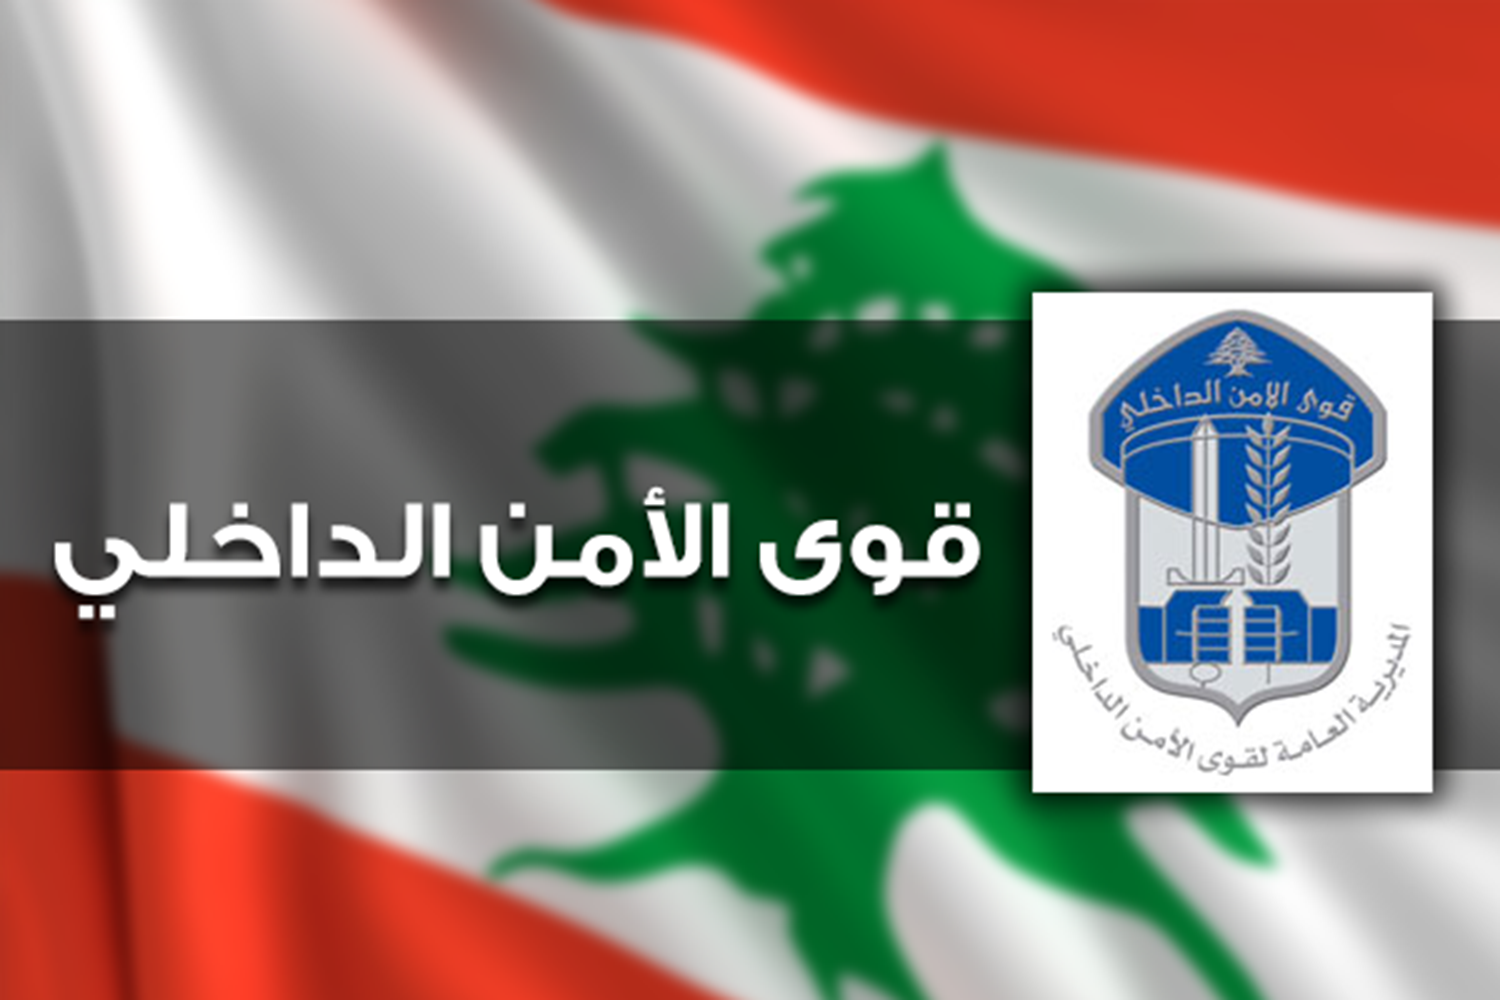 الأمن اللبناني وعائلة سورية (فيديو)